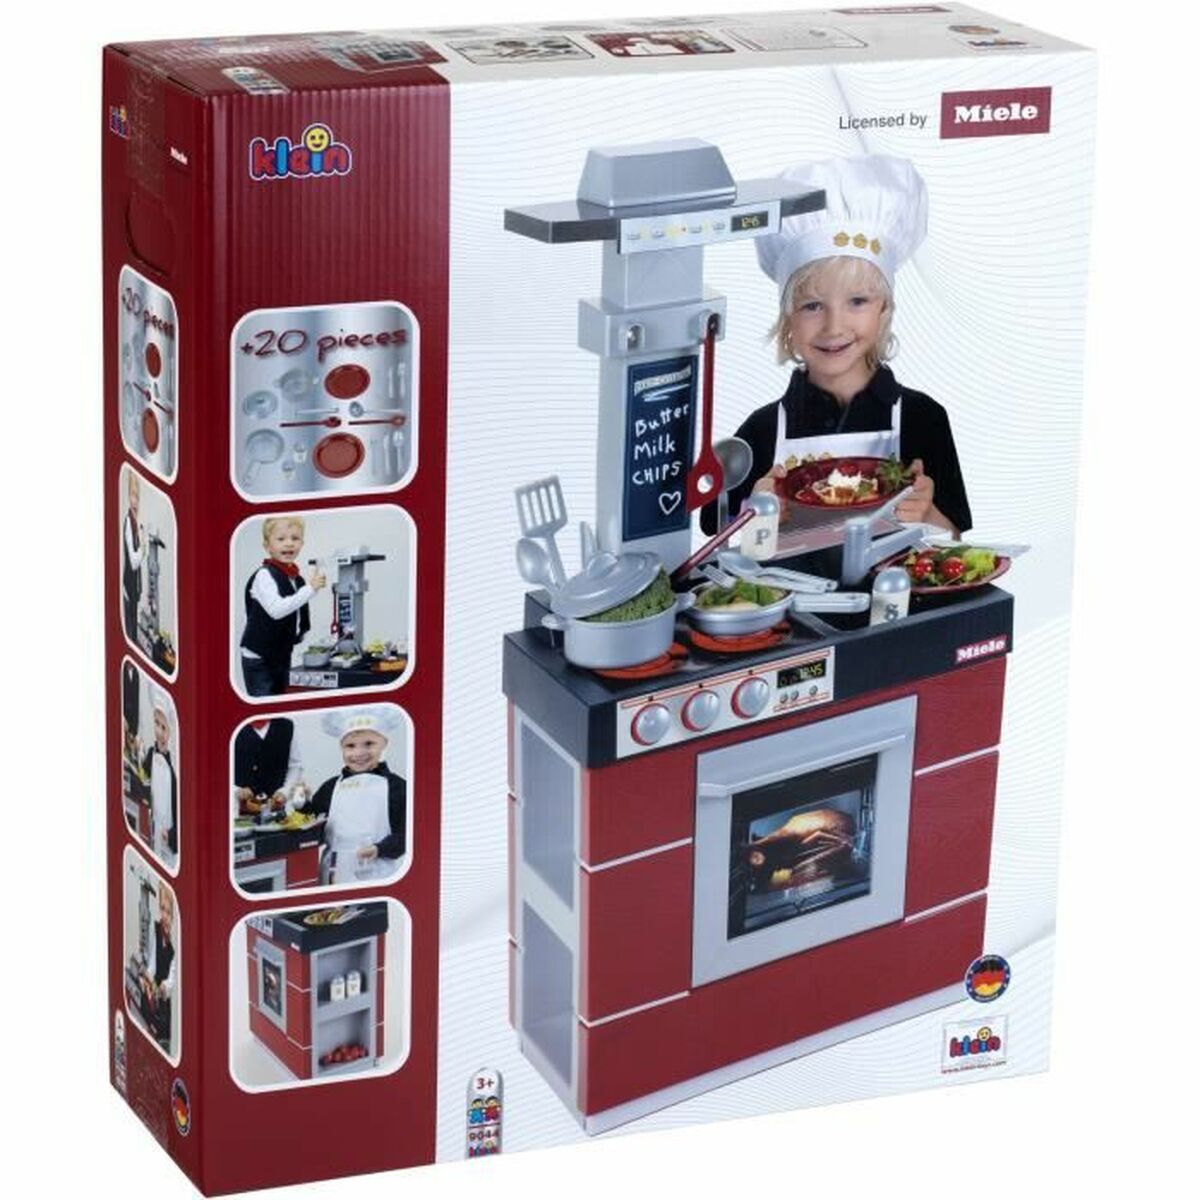 Spielküche Klein Children's Kitchen Compact Model